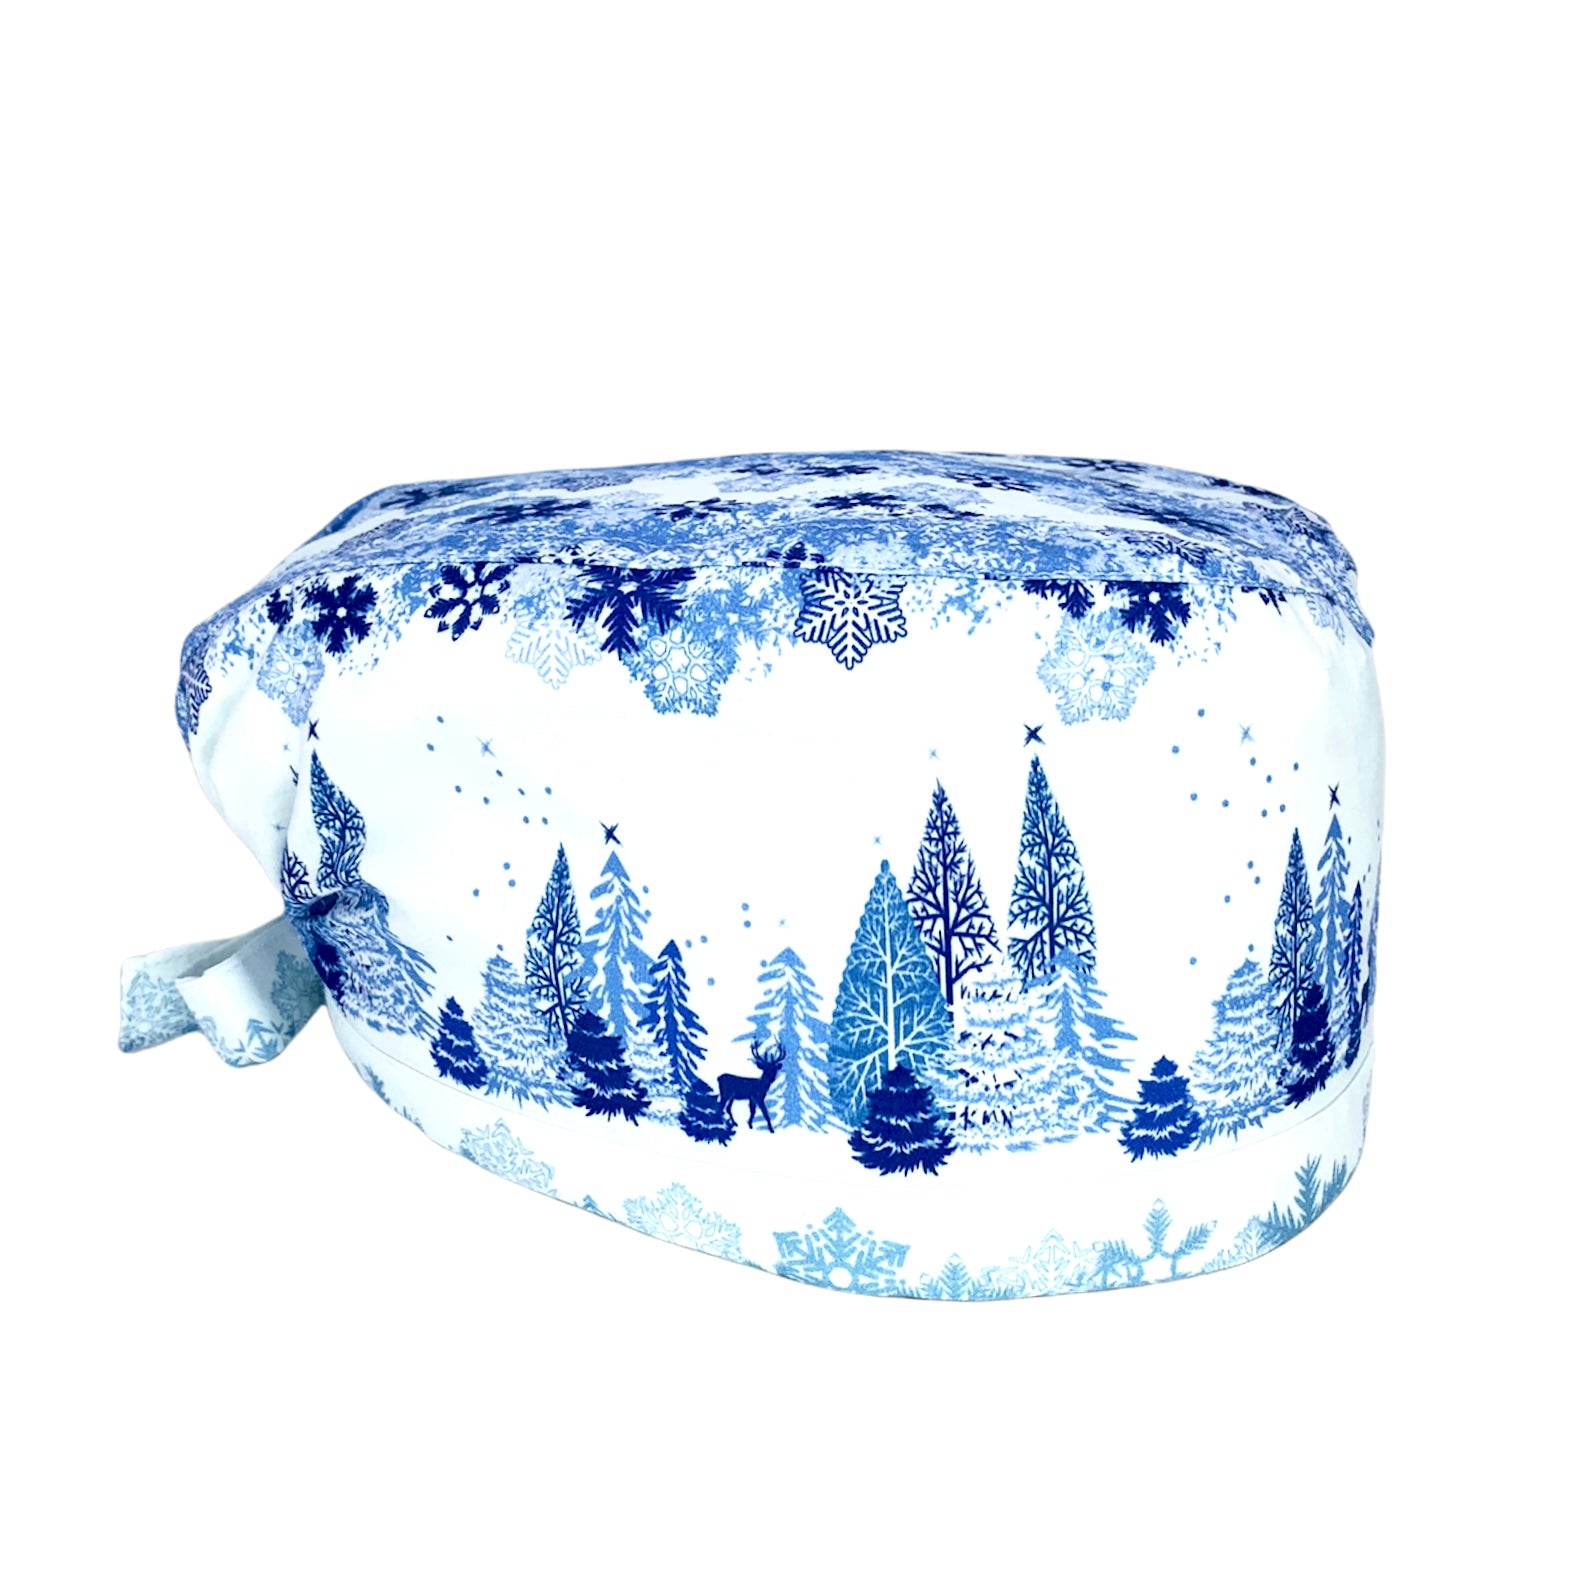 Cuffietta chirurgica bianca con disegni di fiocchi neve in diverse tonalità di blu nella parte superiore einferiore; in mezzo un paesaggio di alberi sotto ai fiocchi di neve con renne che passeggiano indisturbate